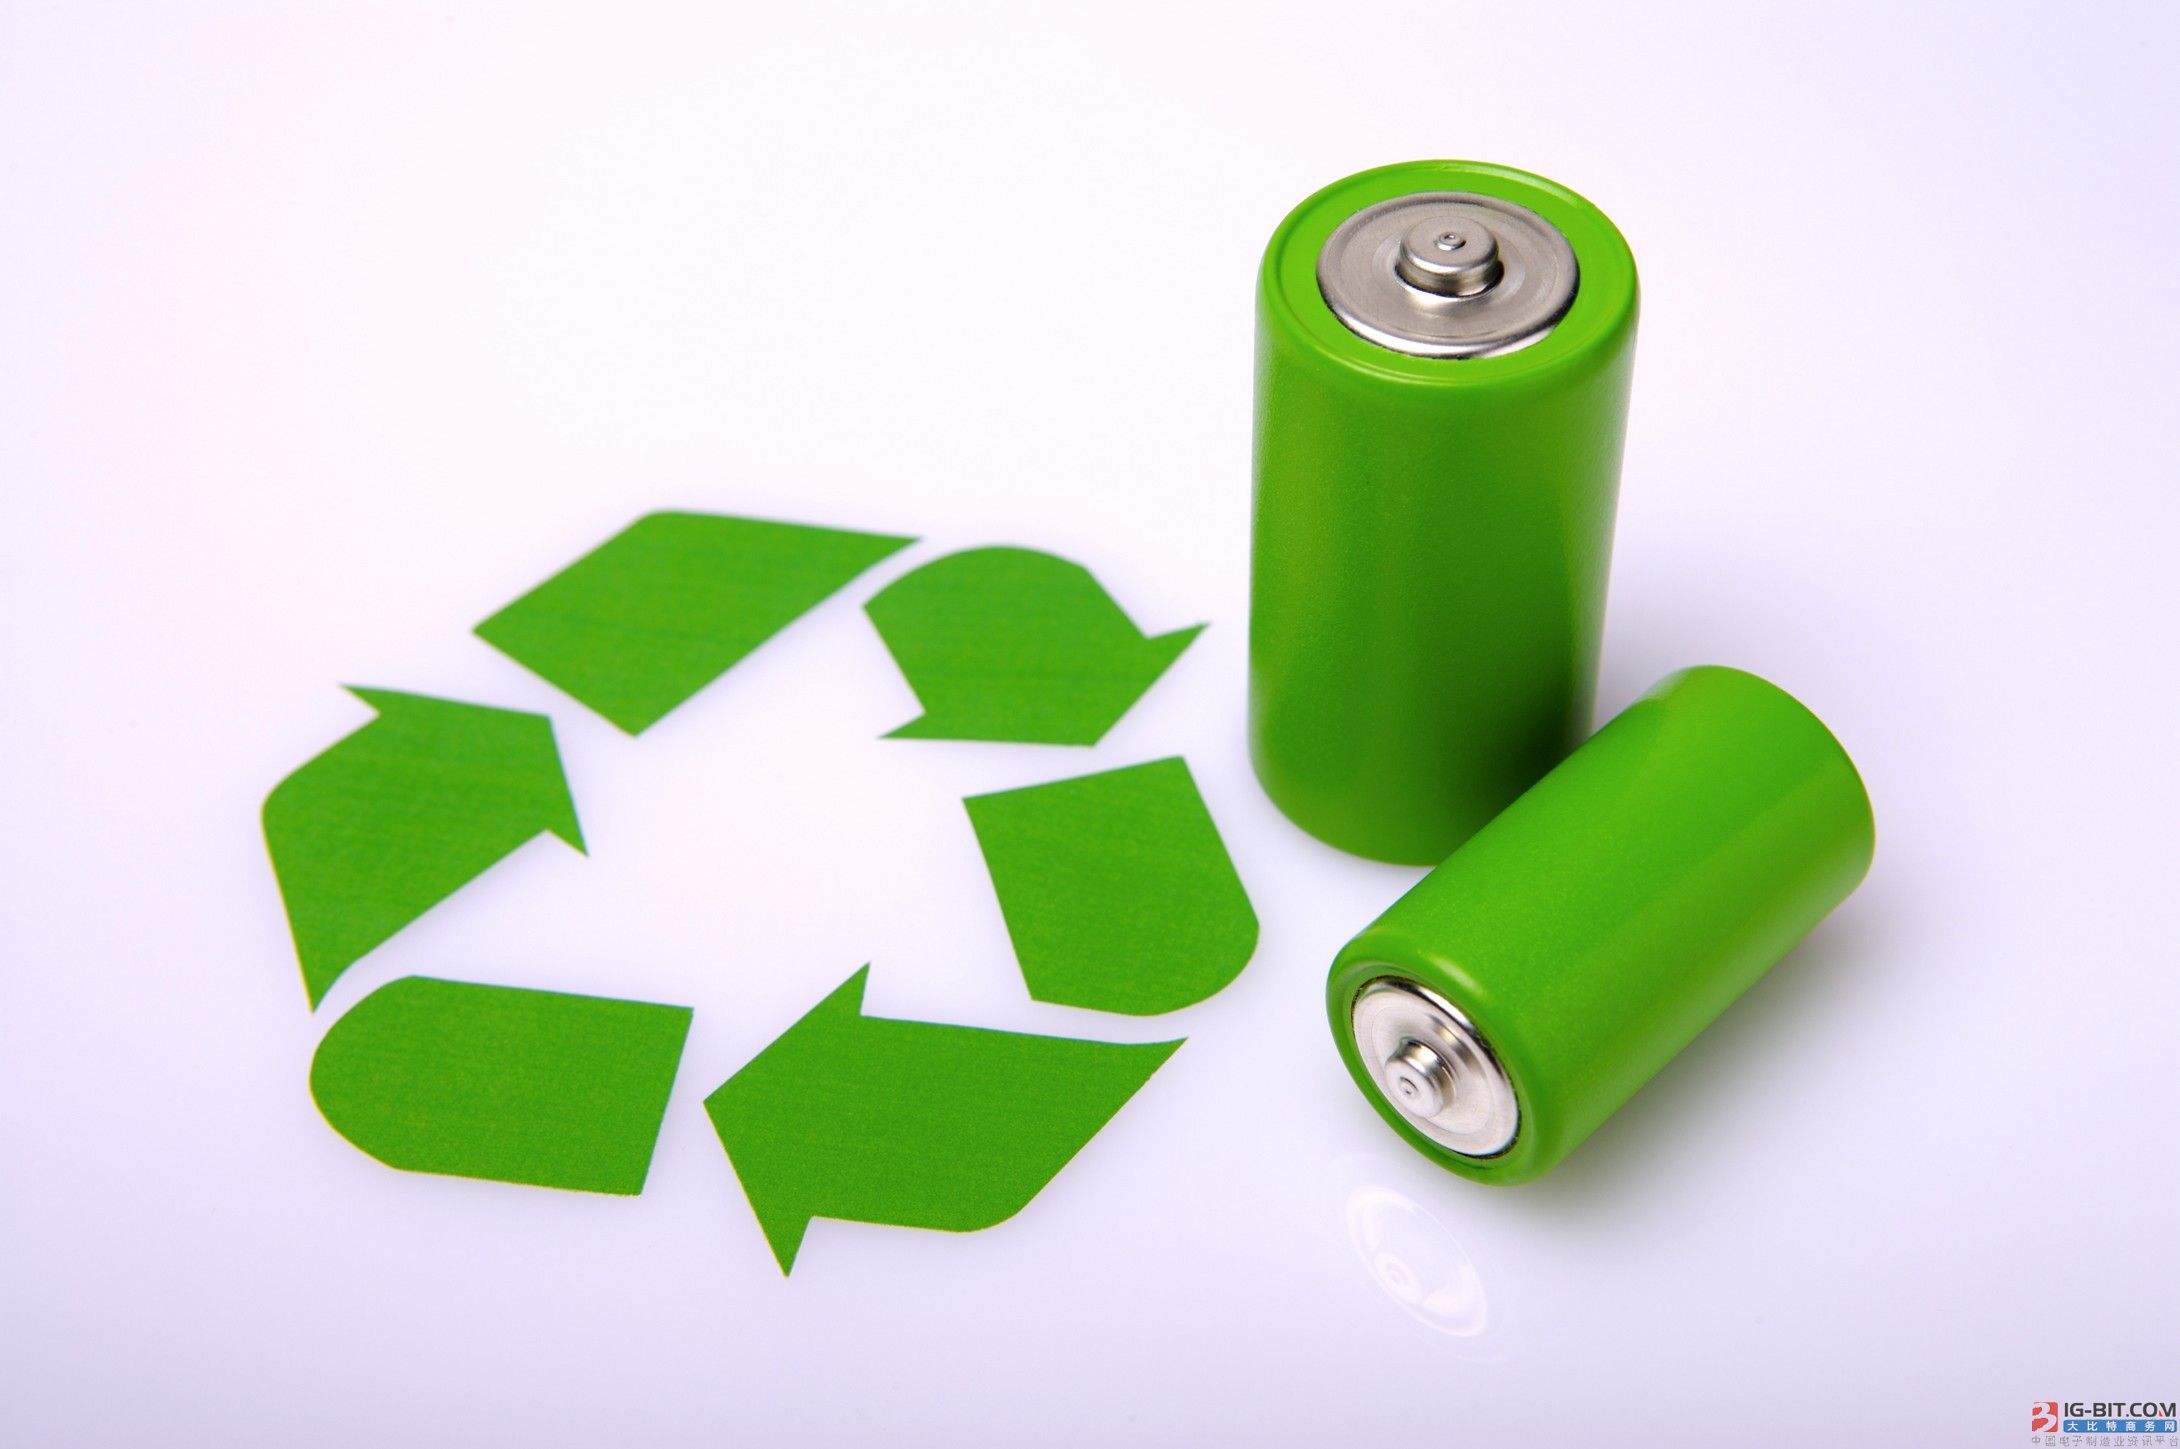 价格倒挂给动力电池回收利用添“新忧”